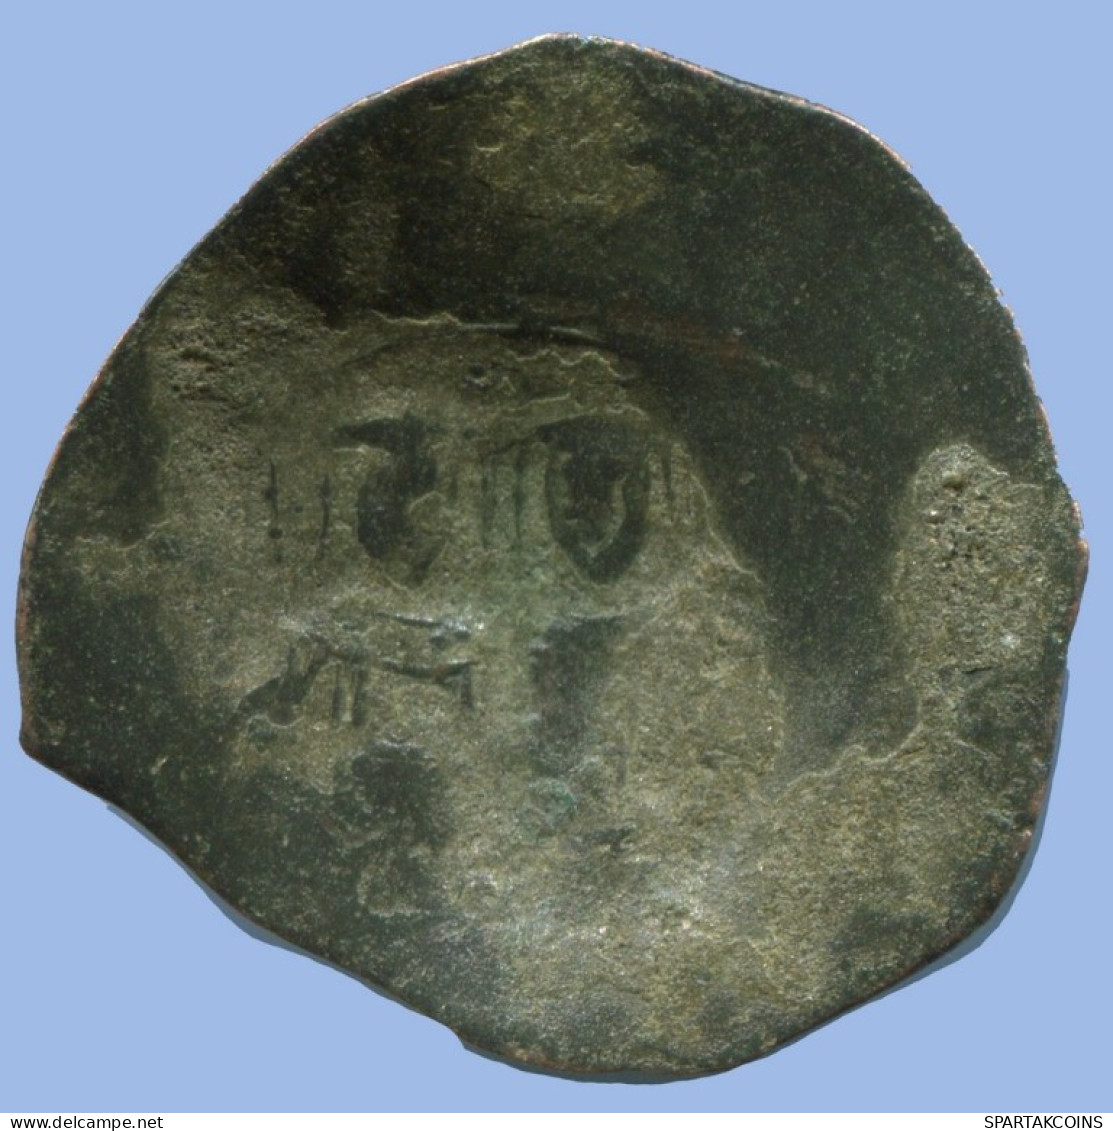 ALEXIOS III ANGELOS ASPRON TRACHY BILLON BYZANTINE Coin 2.1g/24mm #AB449.9.U.A - Bizantine